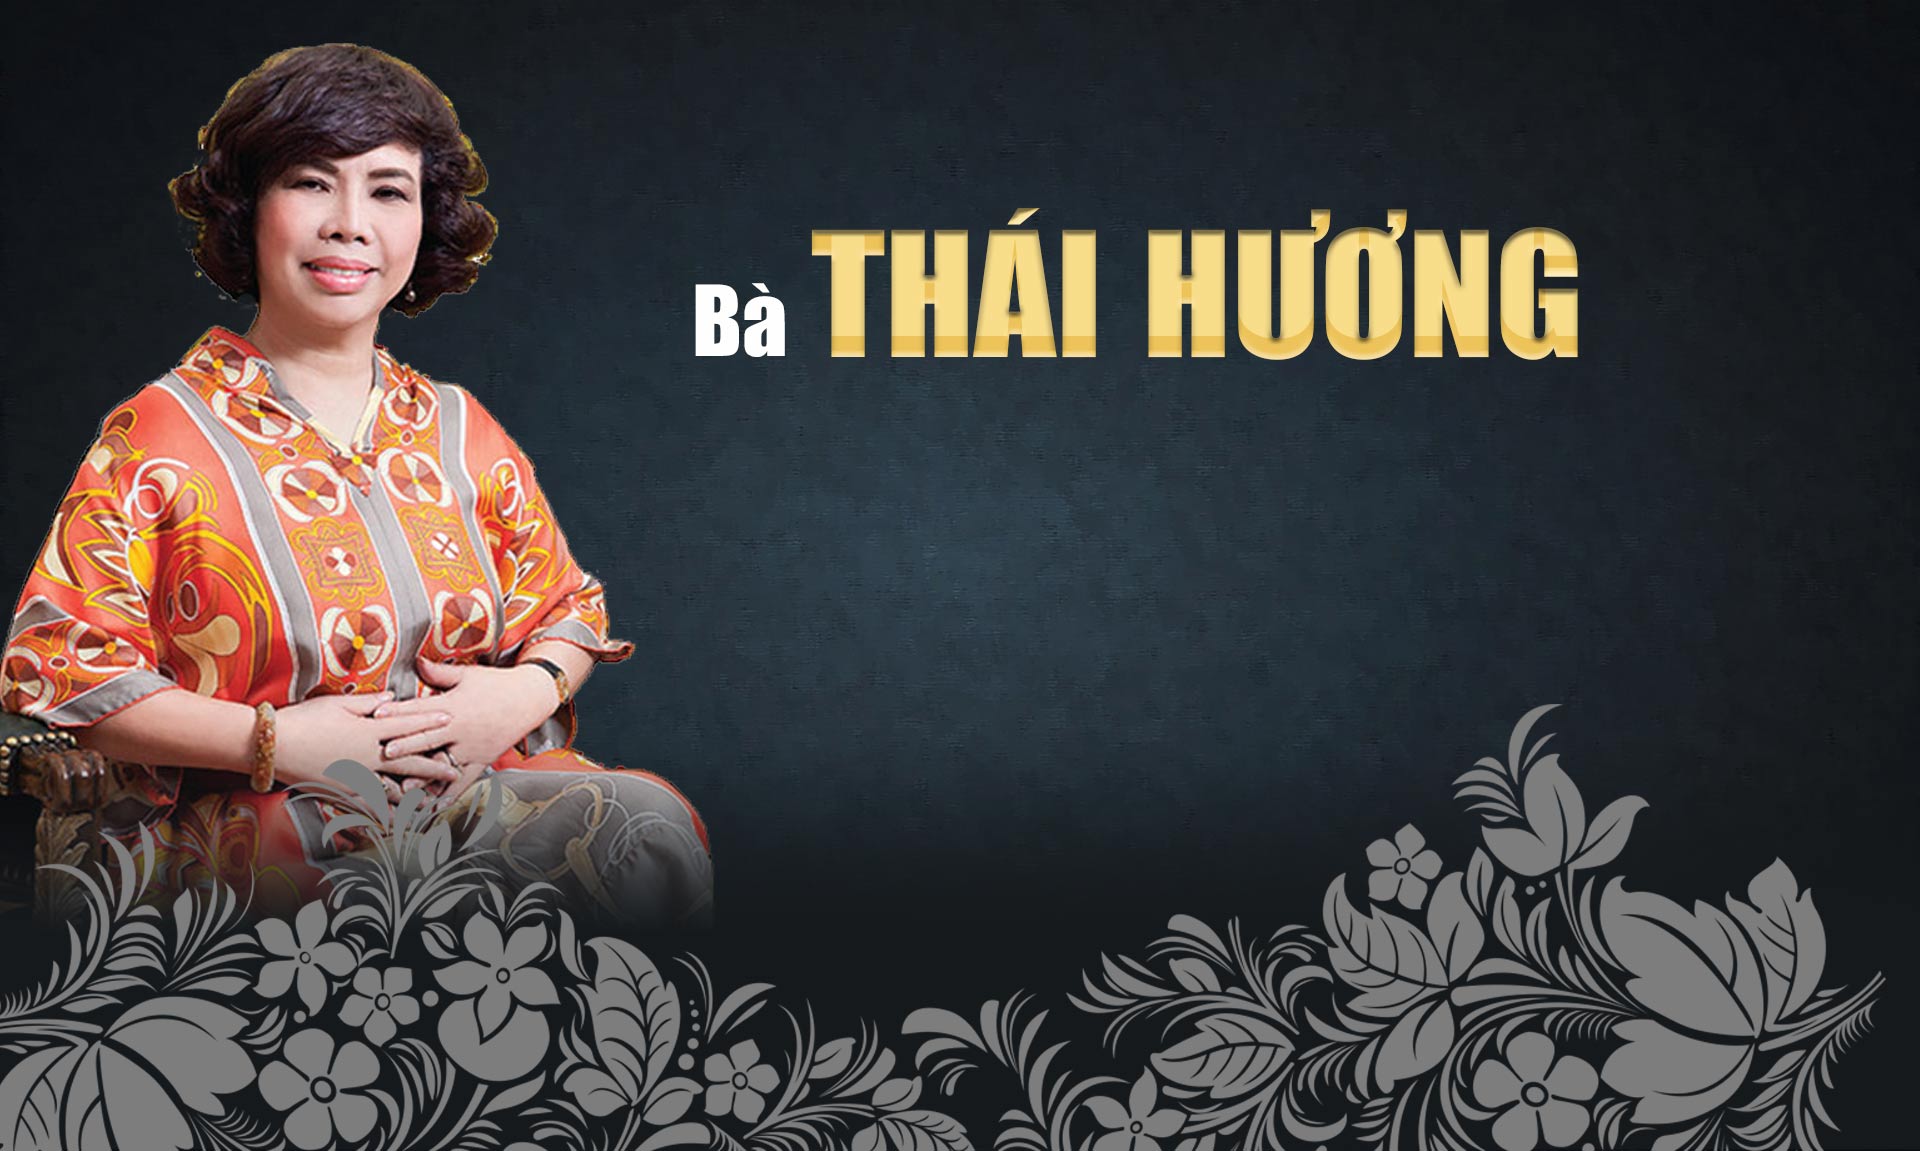 10 phụ nữ Việt gây choáng bởi sự giàu có, giỏi giang và quyền lực - 30